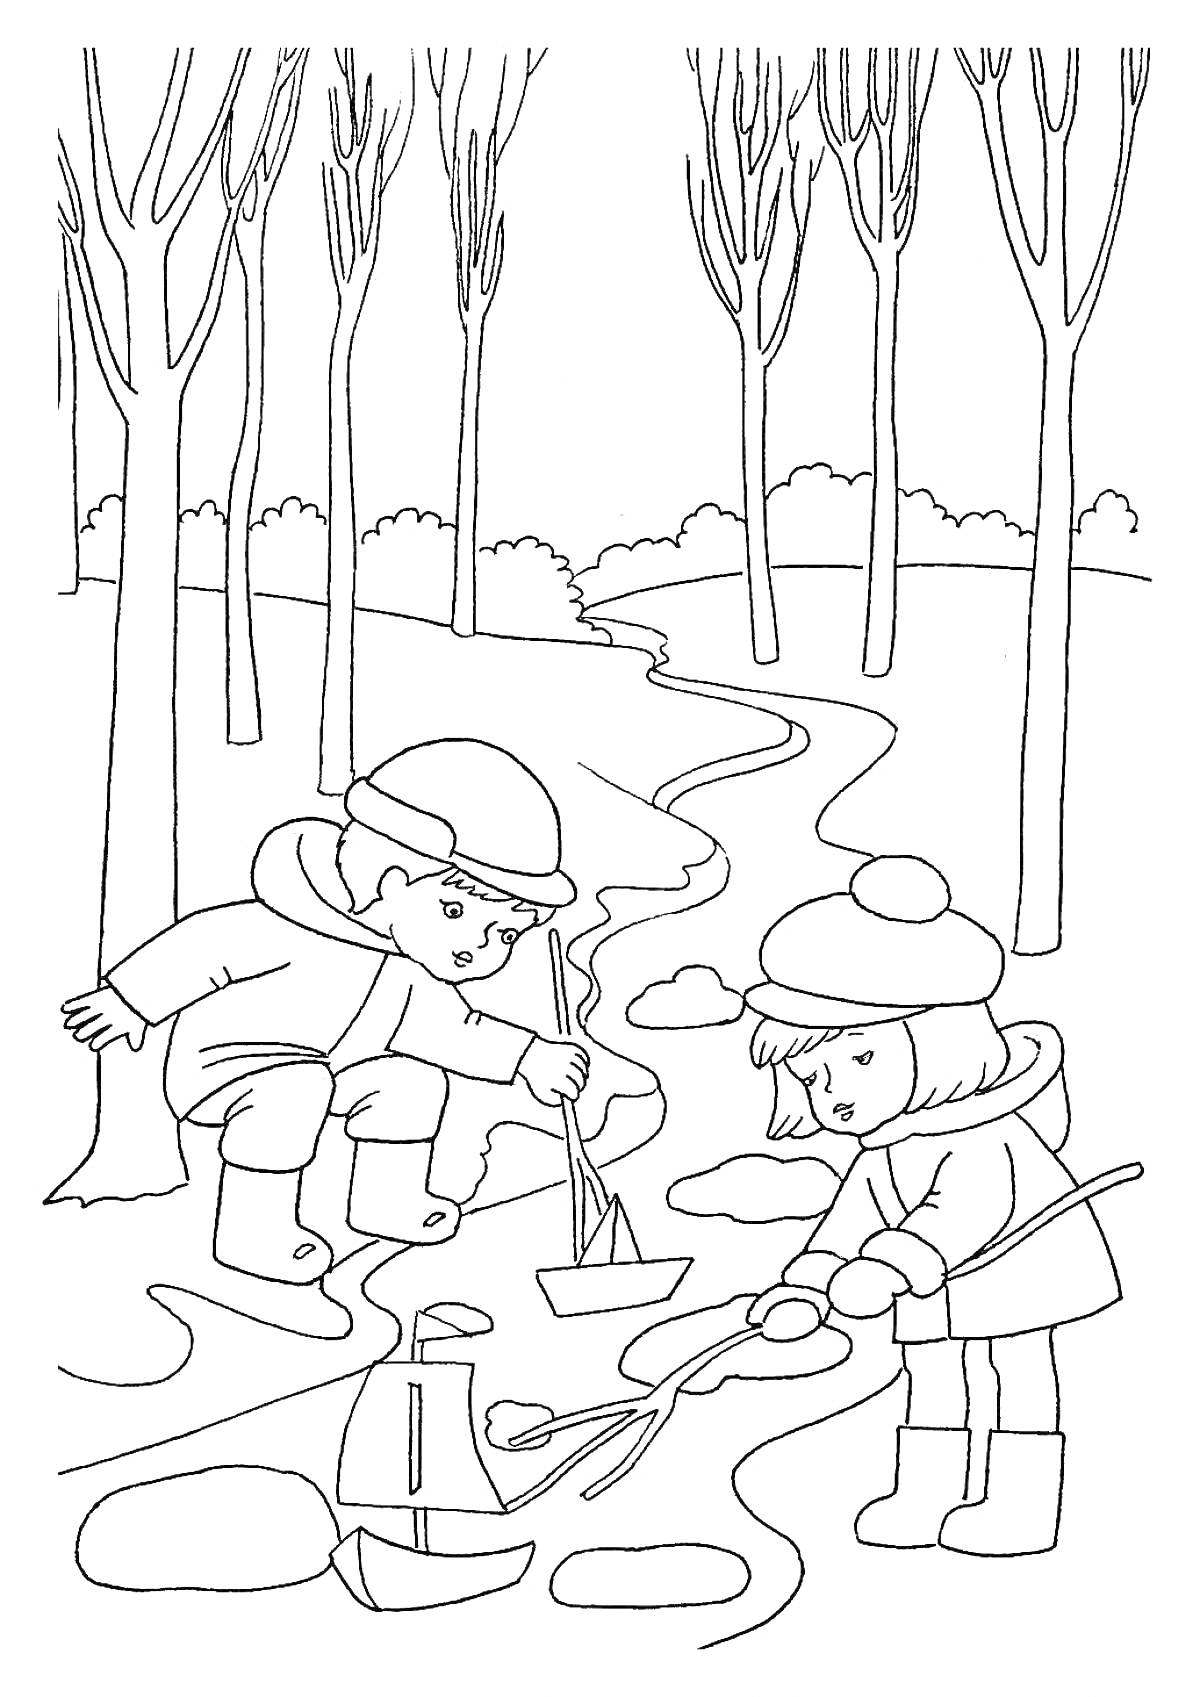 Раскраска Дети пускают бумажные кораблики в весеннем лесу у ручья